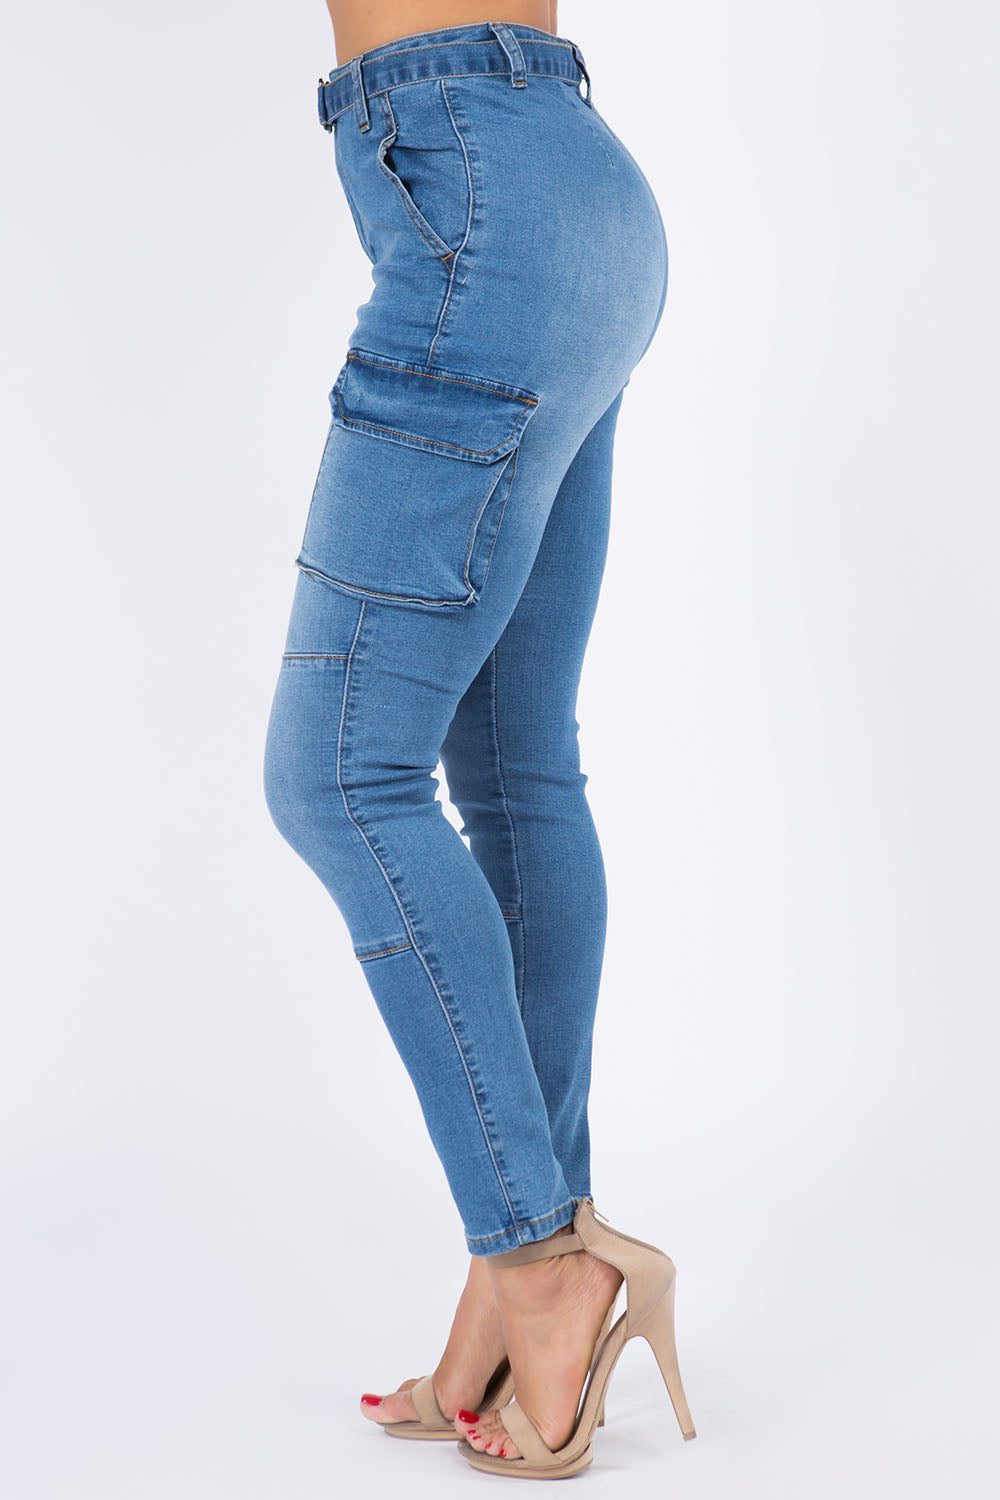 High Waist Denim Cargo Style Skinny Jeans w/ Belt Trim